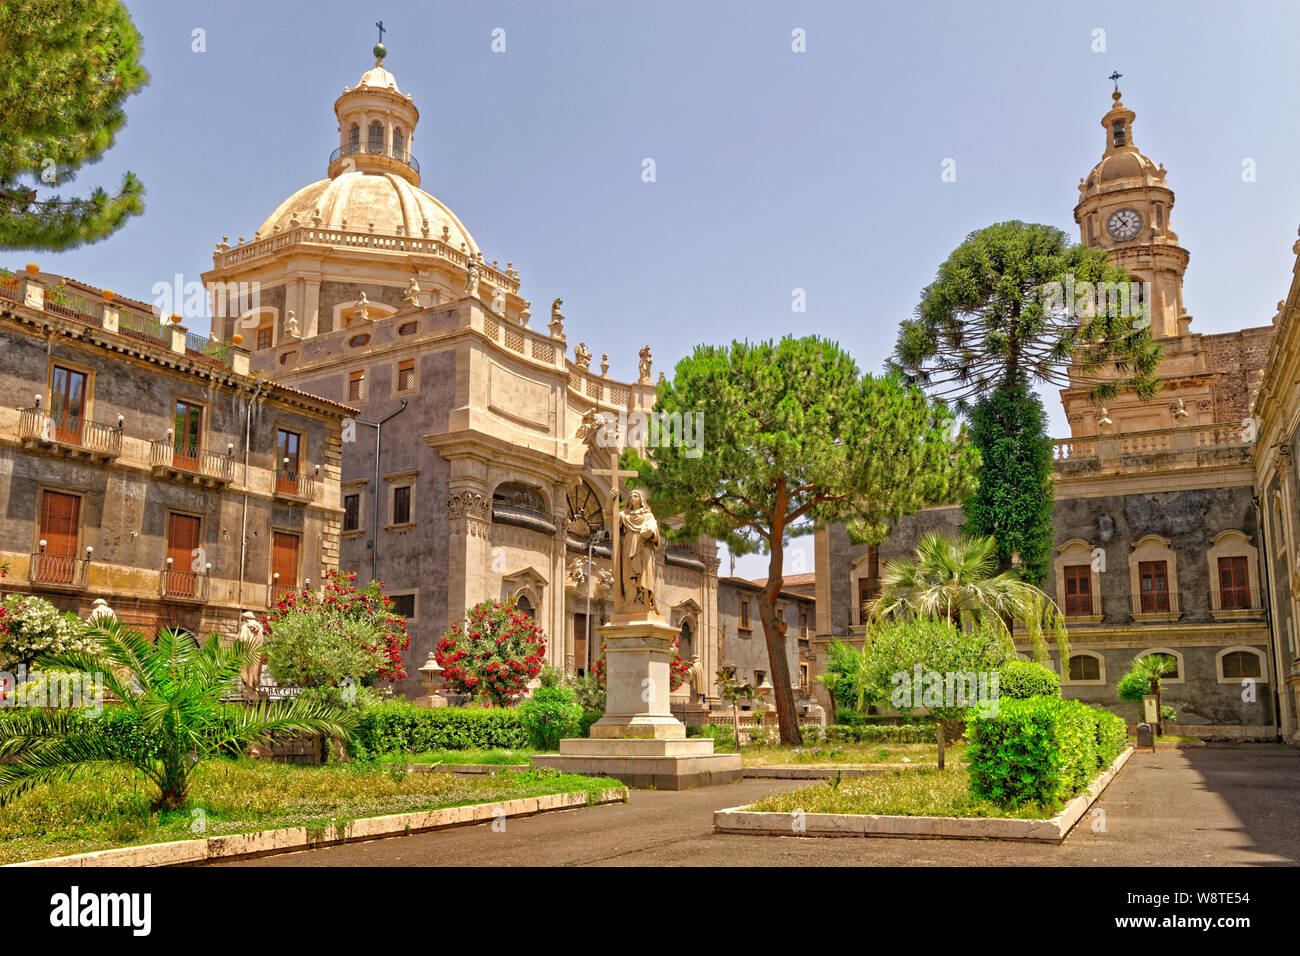 Cour-jardin de Sainte Agathe de la cathédrale Saint-Paul et l'église de l'Abbaye de Sainte Agathe à Catane, Sicile, Italie. Banque D'Images